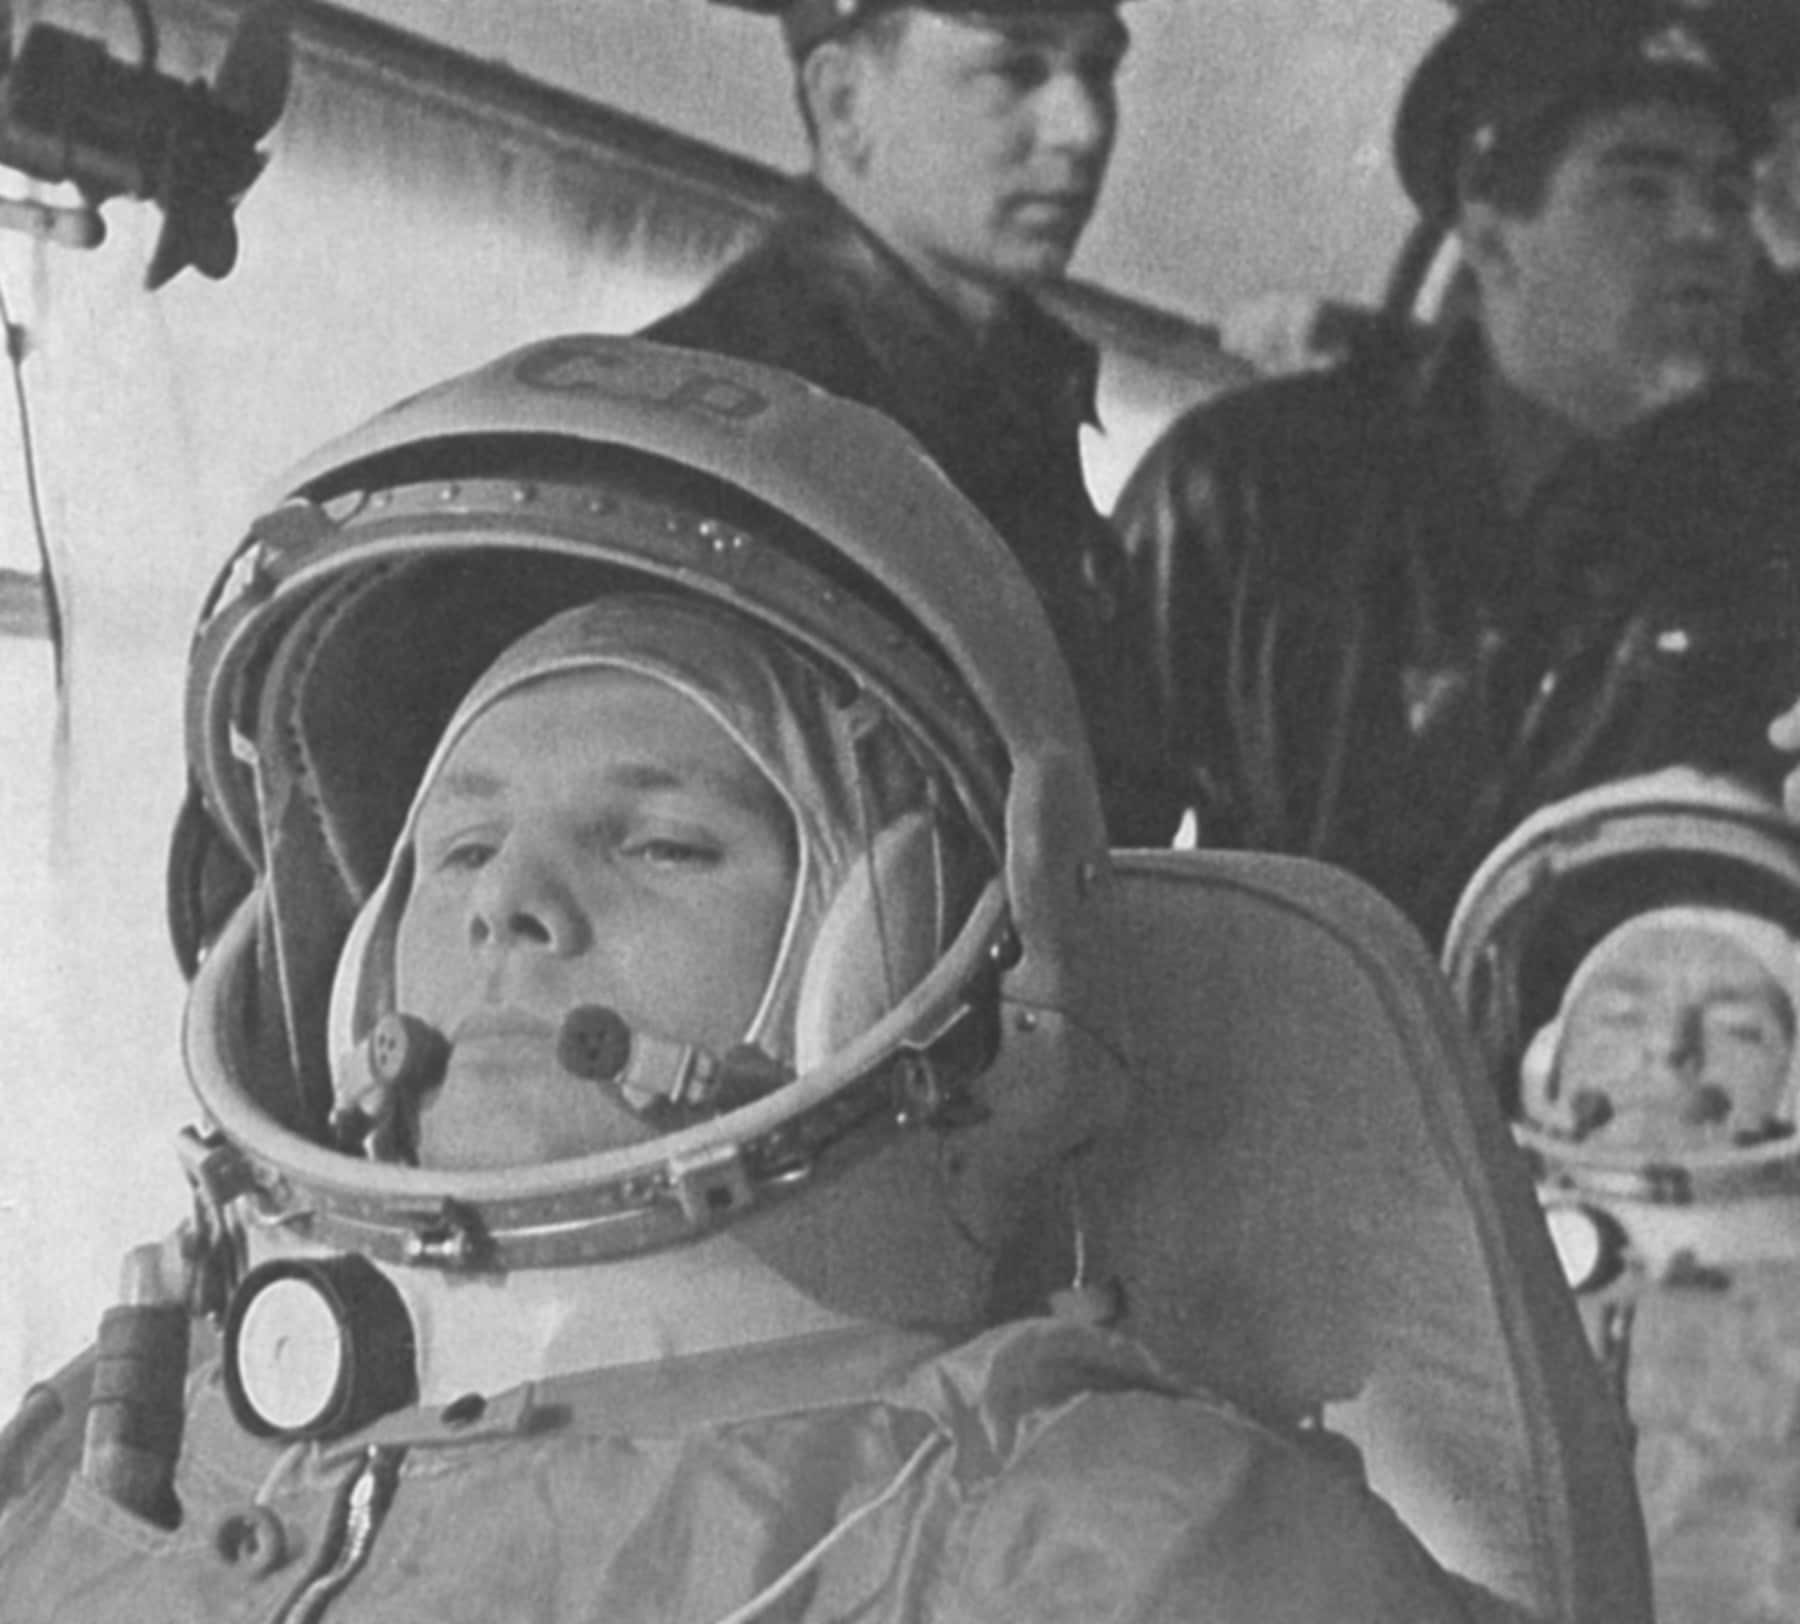 Il cosmonauta Yuri Gagarin, in una fase di preparazione del lancio che lo porterà come primo uomo nello spazio